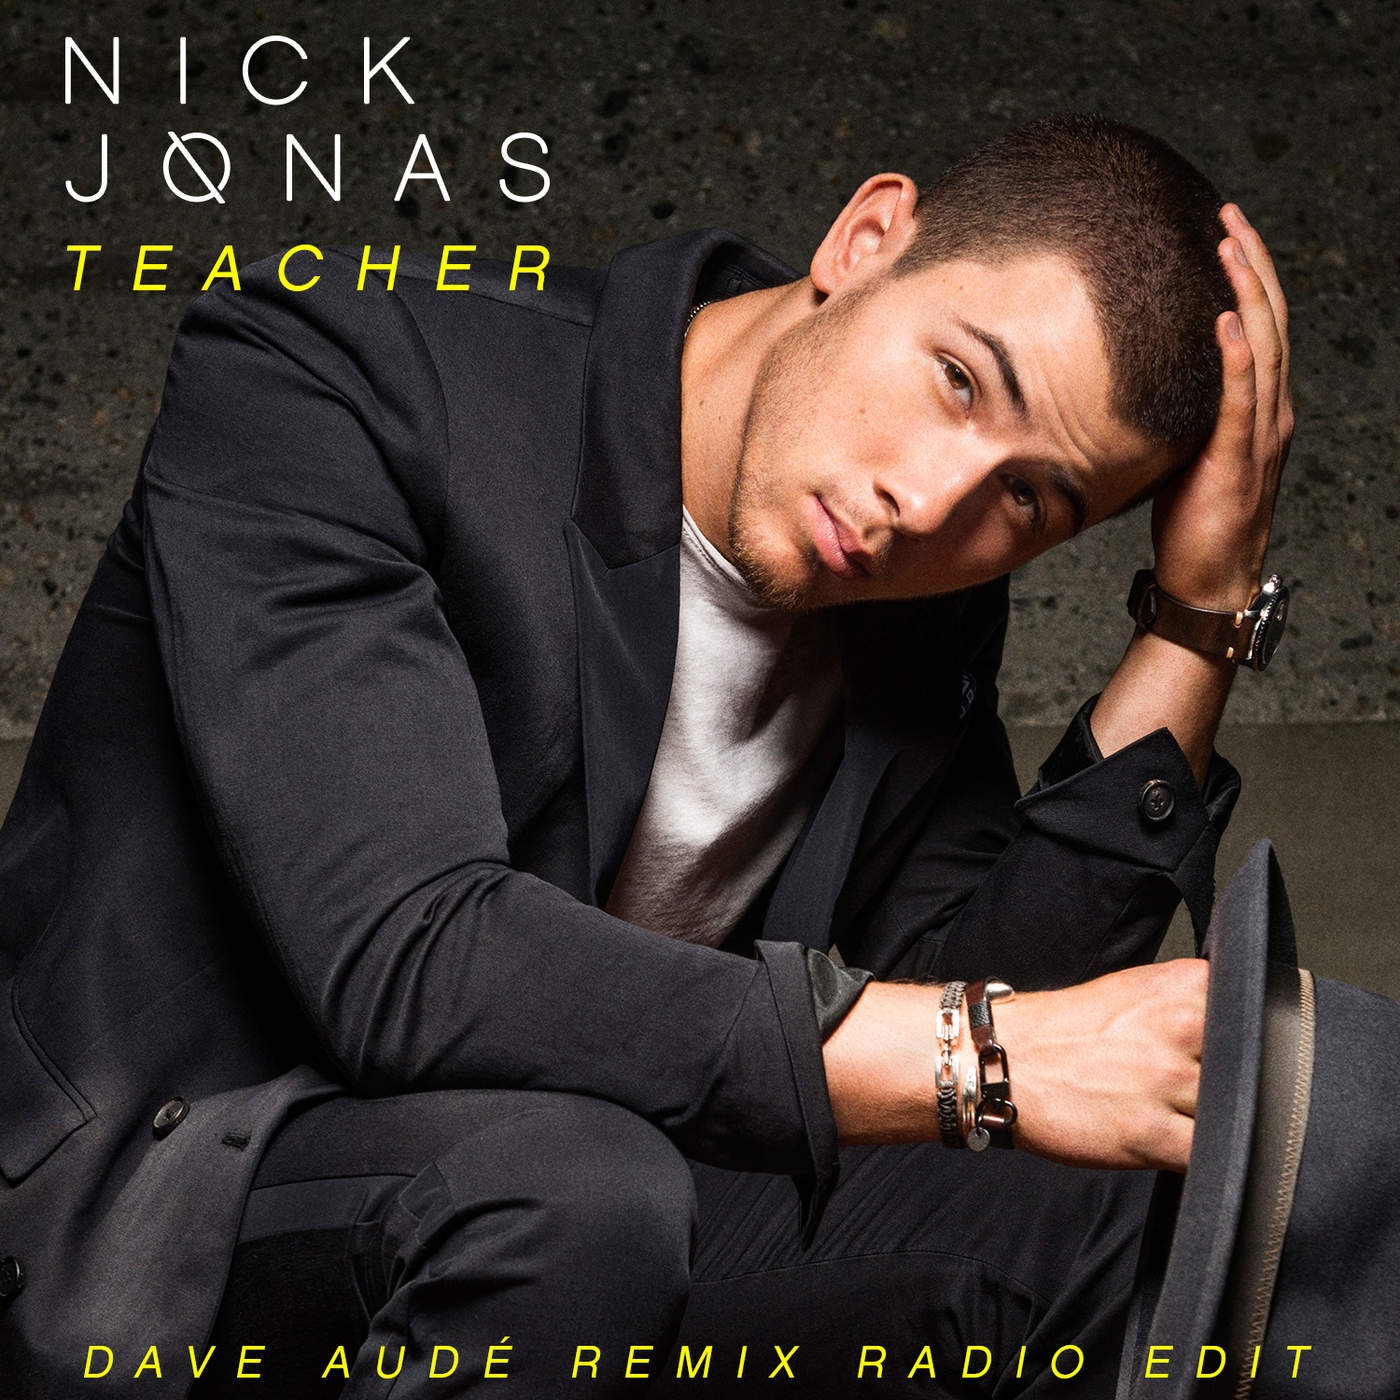 Teacher Dave Aude Remix Radio Edit